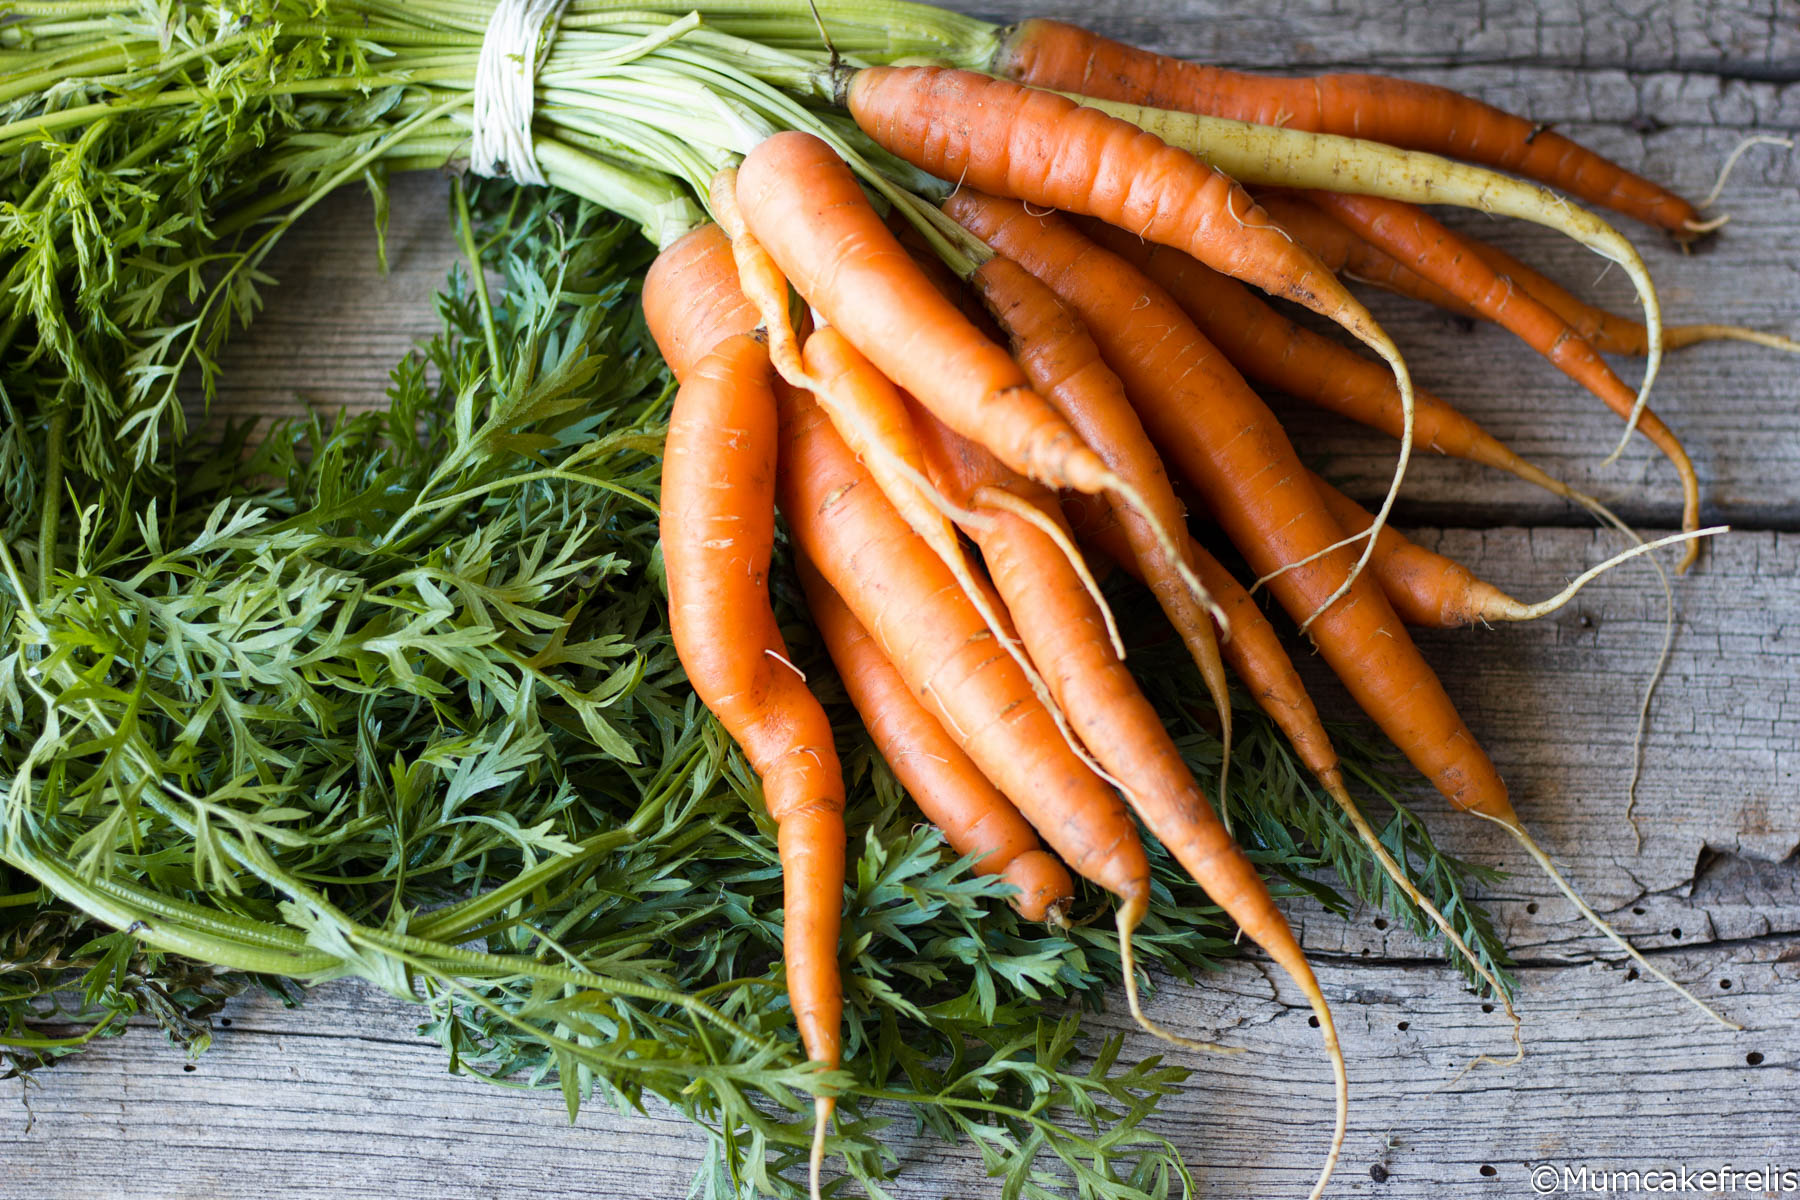  carote ricette veloci